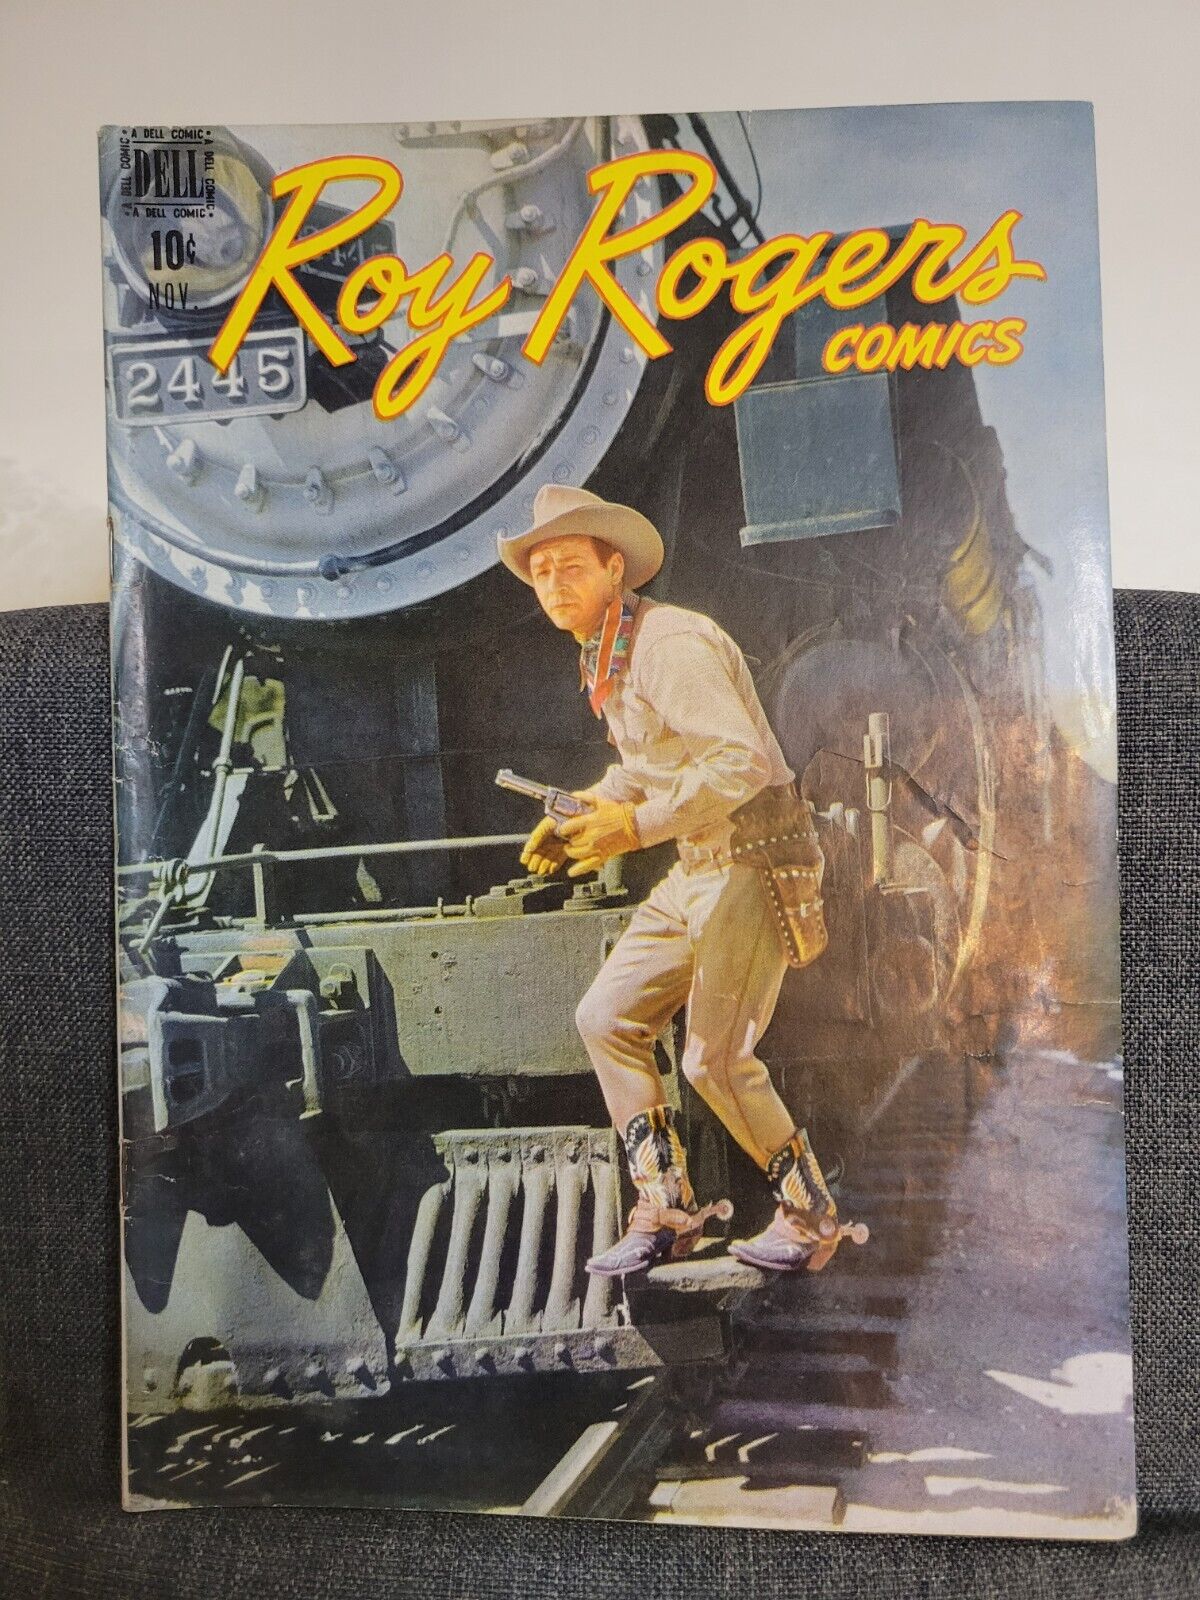 Roy Rogers Comics #11 - $0.10 Dell Pub., November 1948 - VG Volume 1